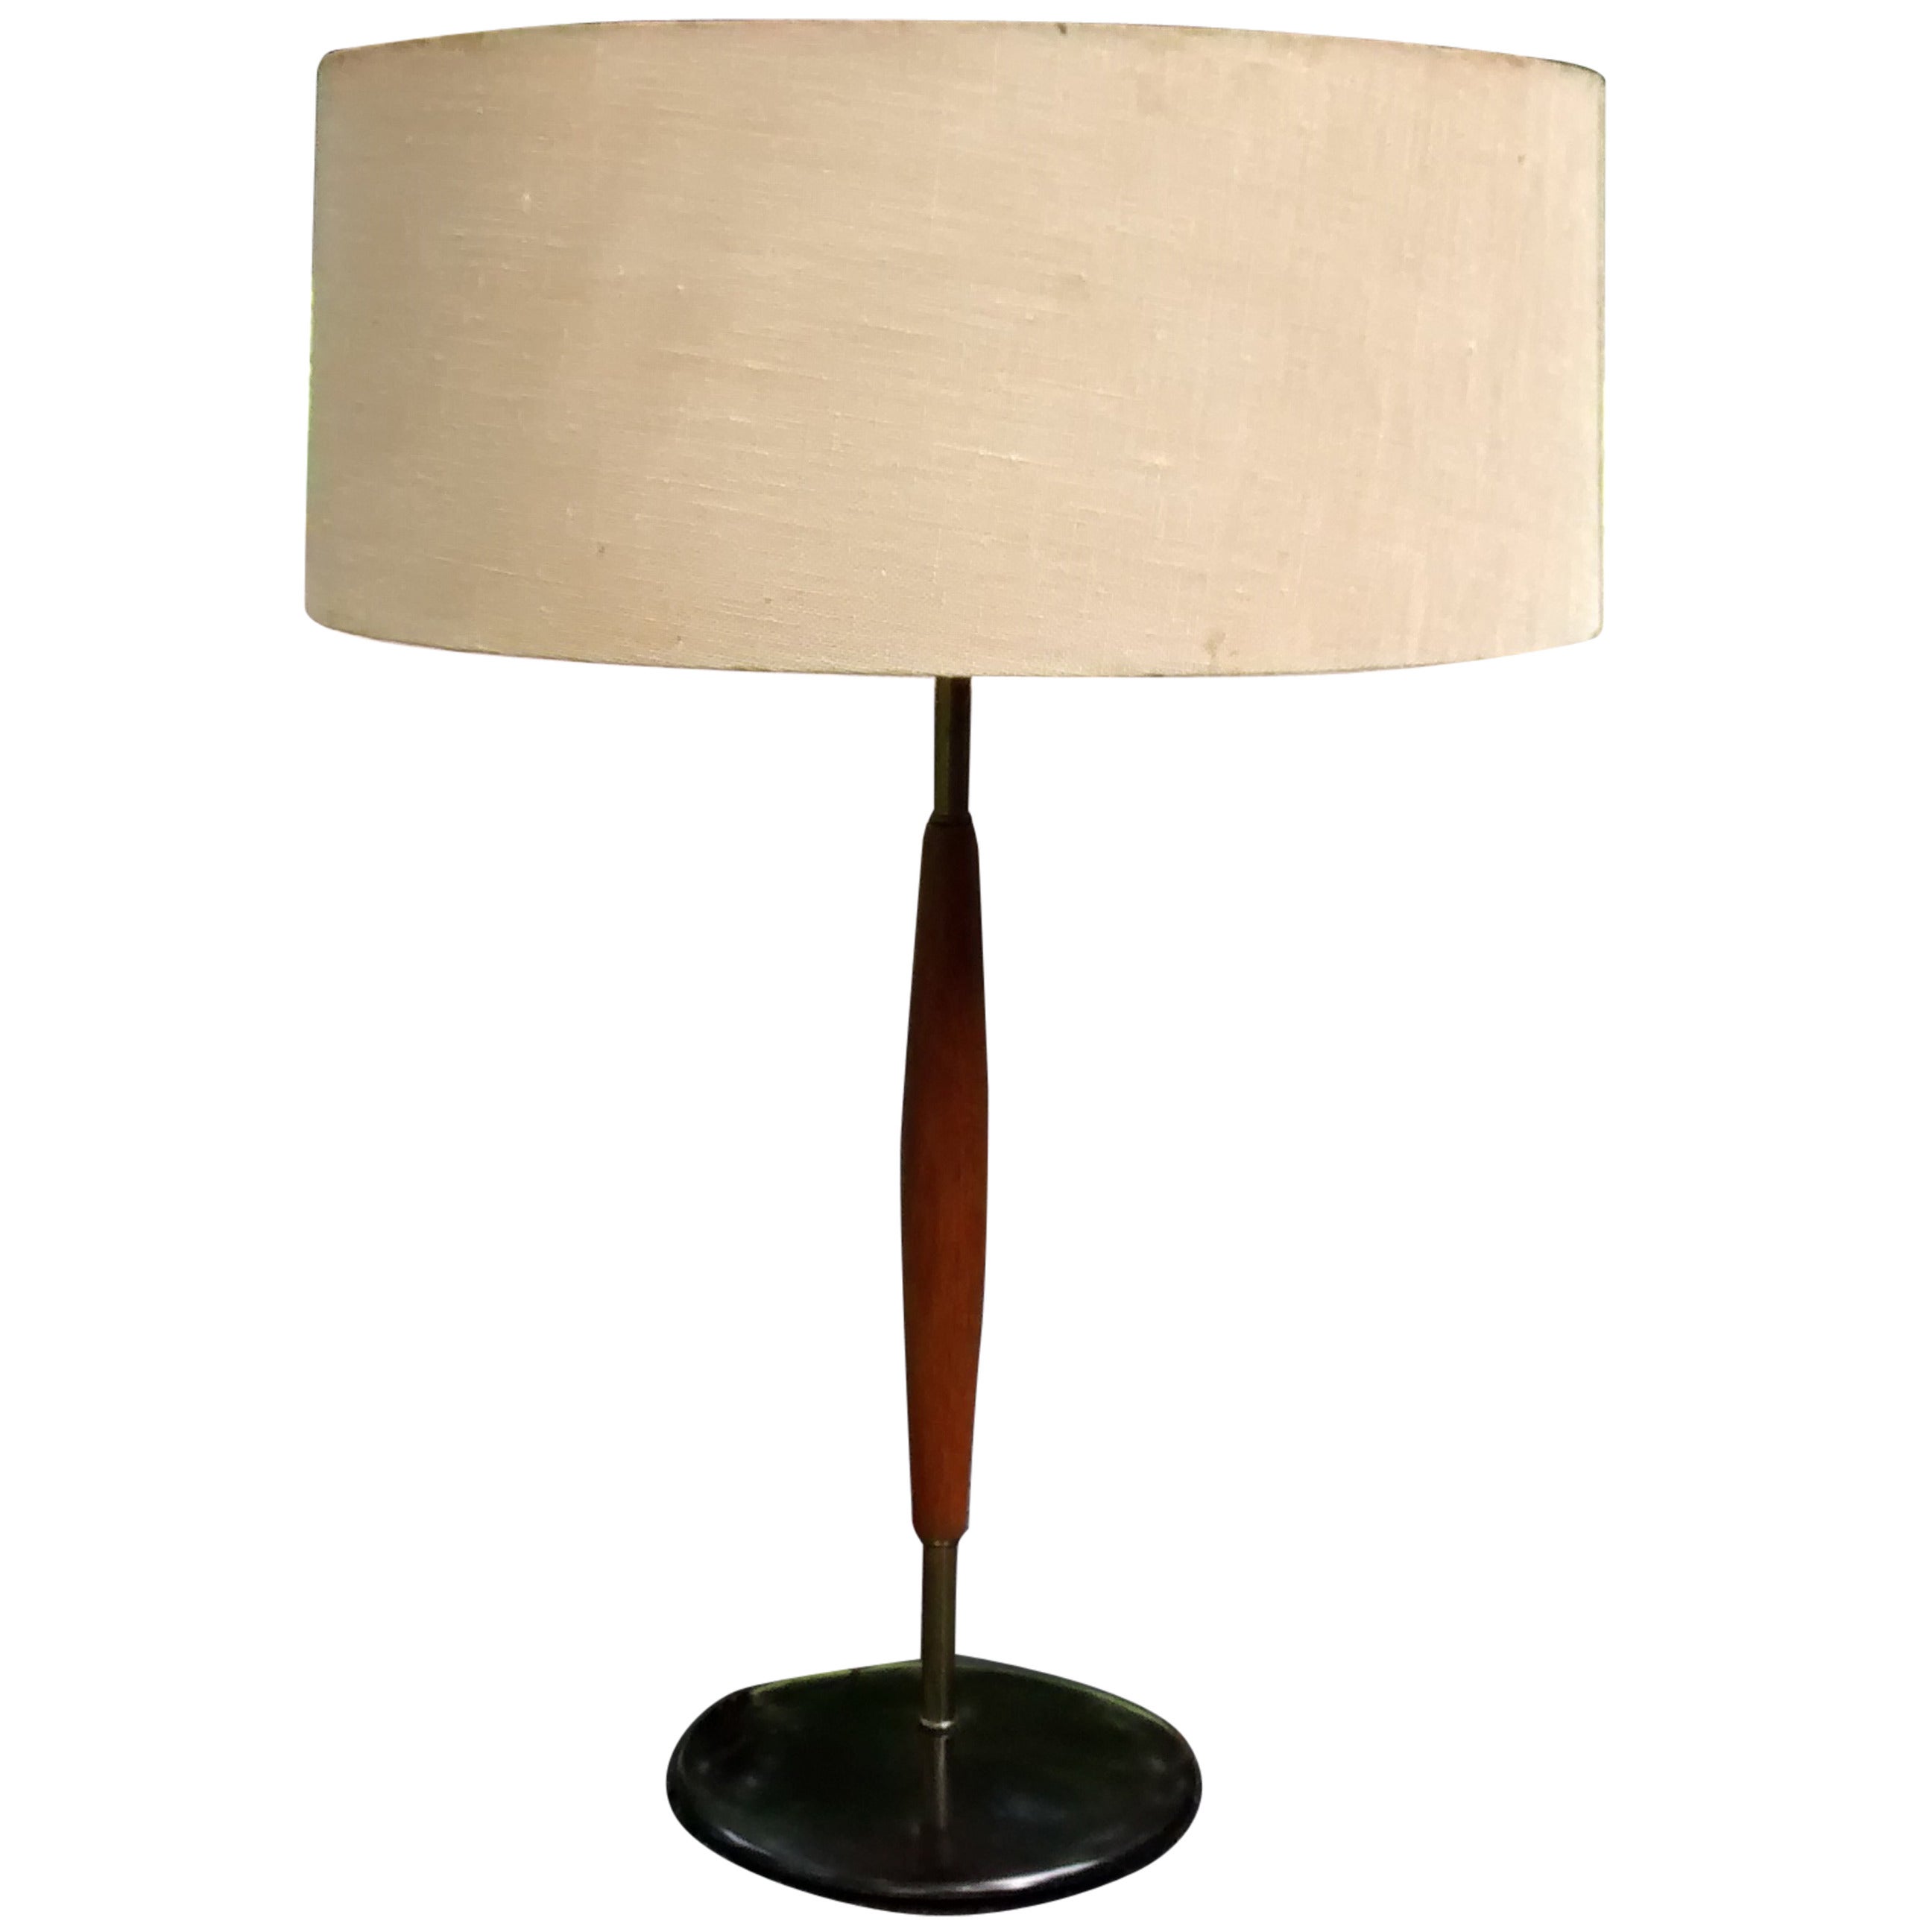 Gerald Thurston for Lightolier Single Table Lamp For Sale